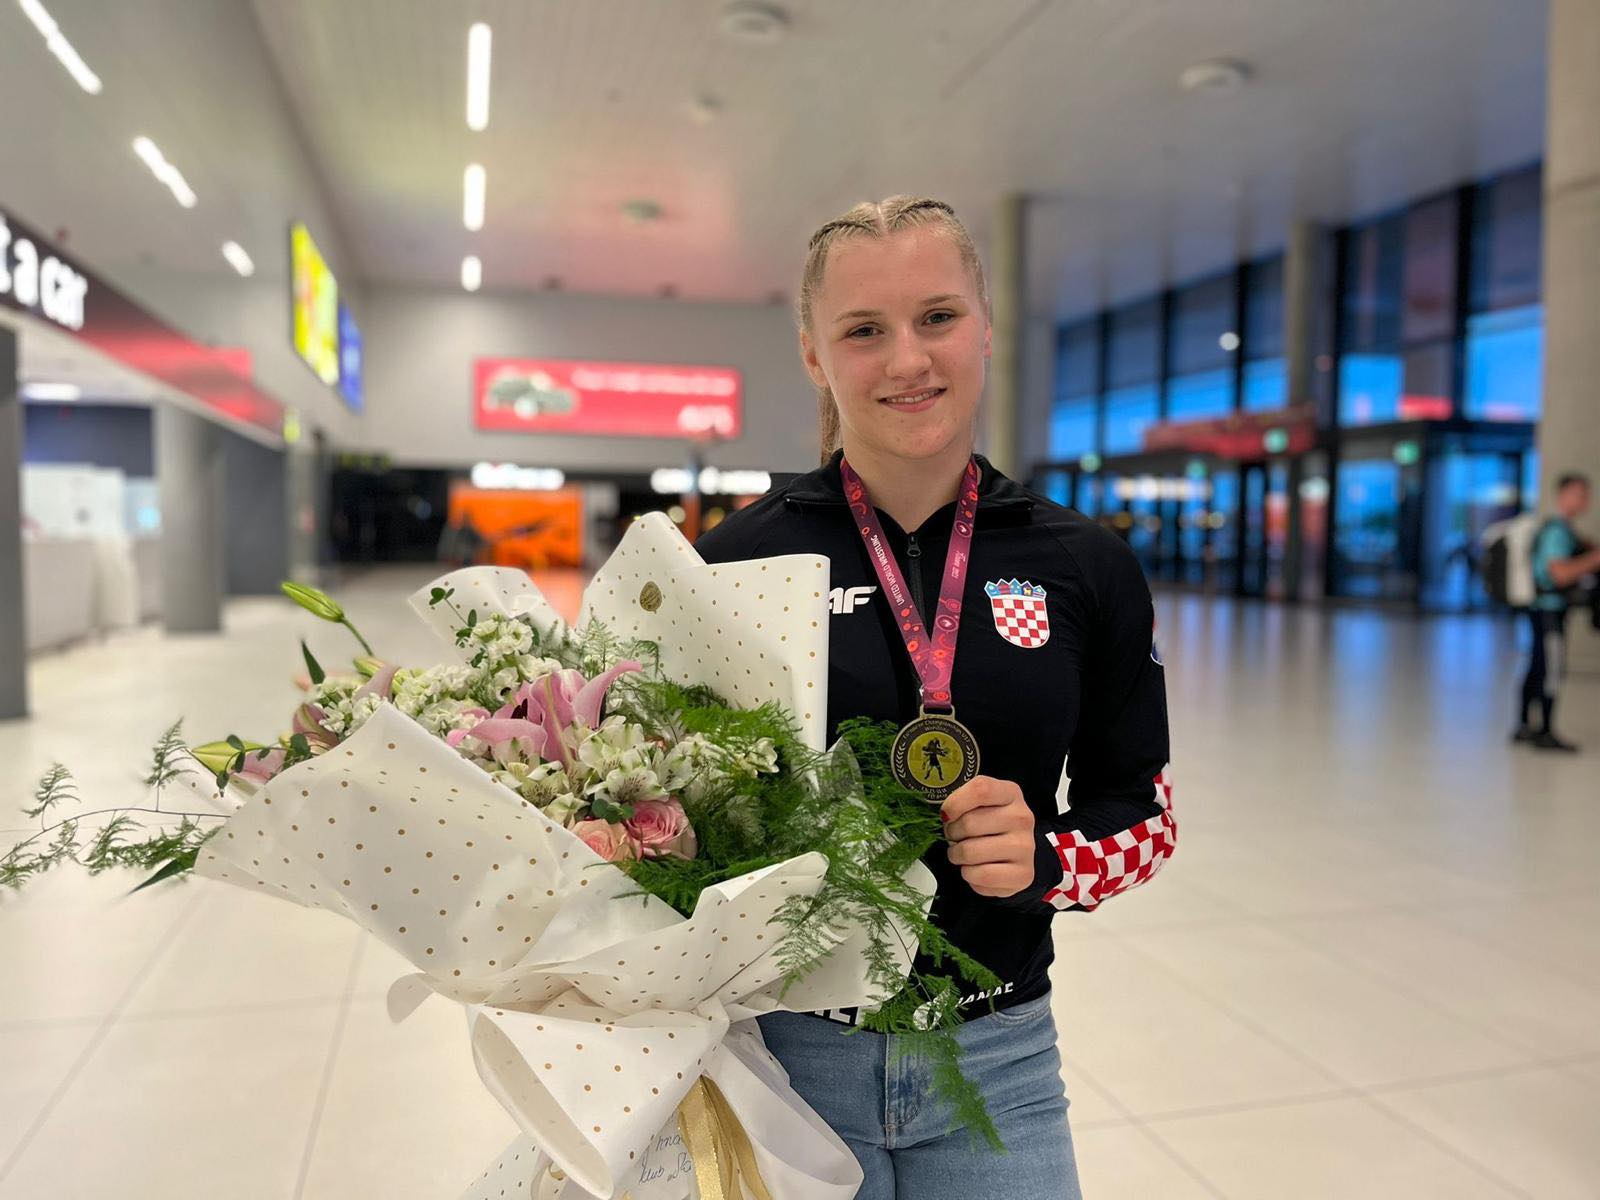 veronika vilk, europska prvakinja u hrvanju, prikazana je na slici s buketom cvijeća, zlatnom medaljom u rukama te jaknom s hrvatskim 'kockicama'